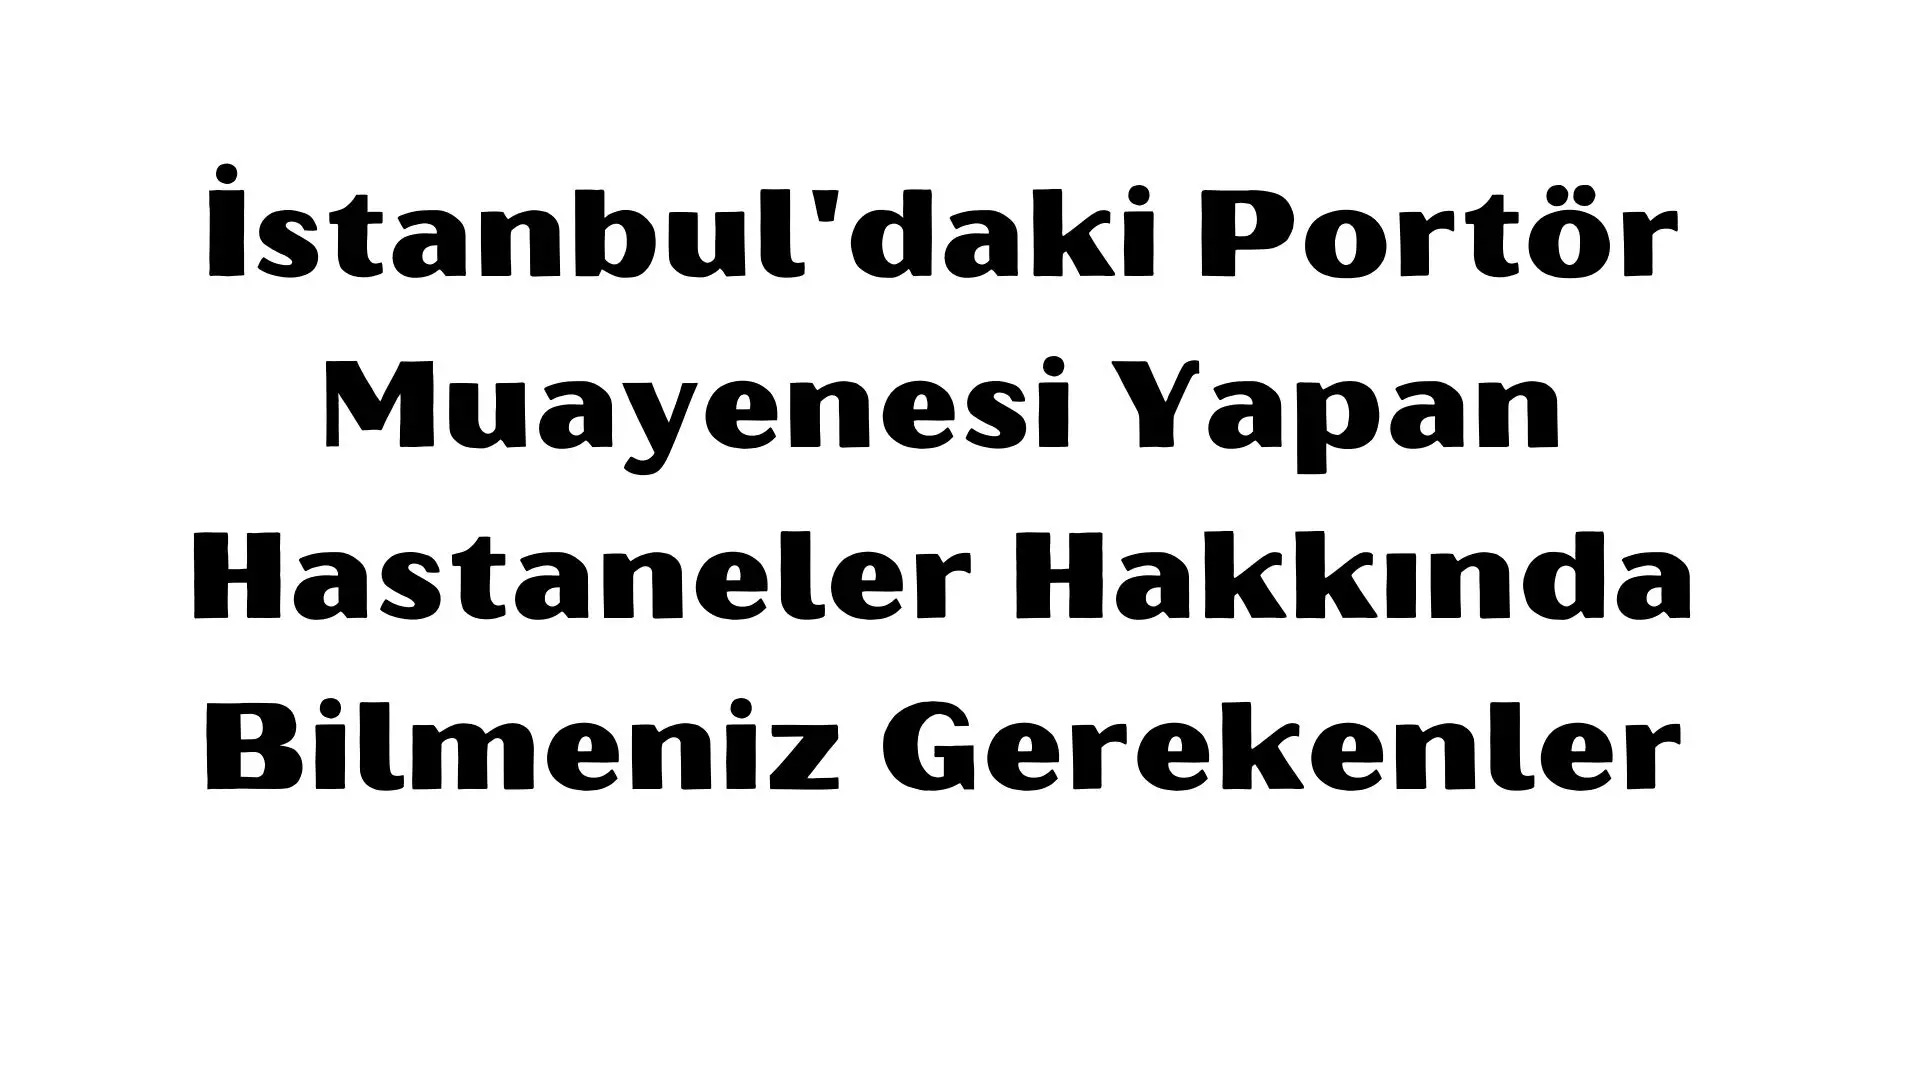 Portör muayenesi yaptırmak isteyenler için İstanbul’daki seçenekler